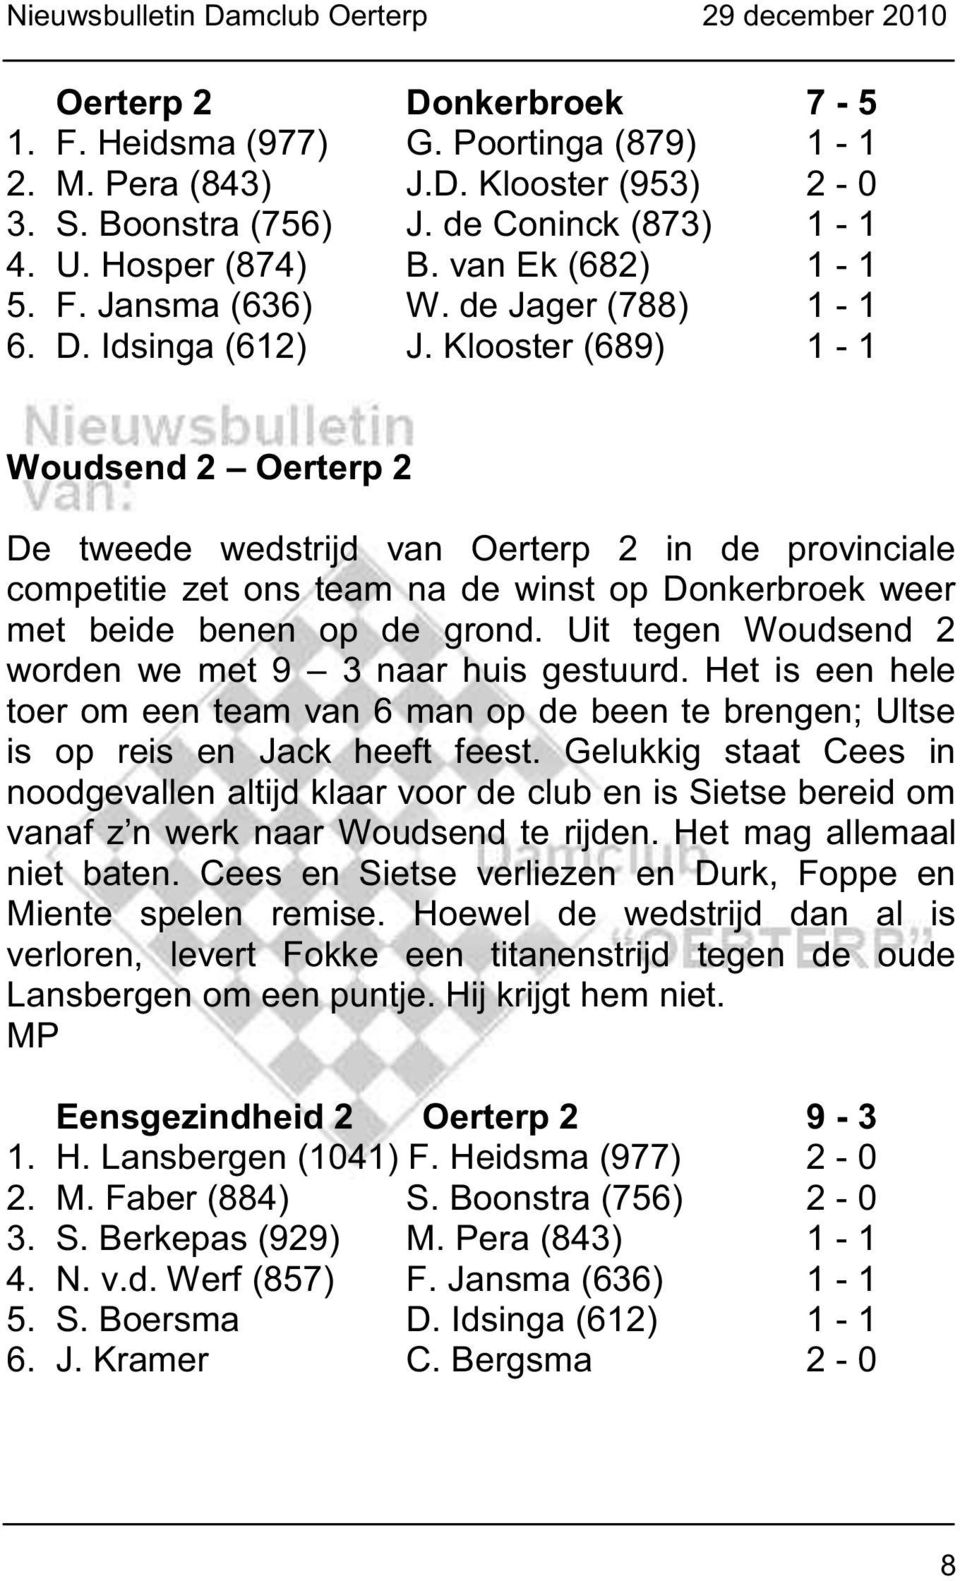 Klooster (689) 1-1 Woudsend 2 Oerterp 2 De tweede wedstrijd van Oerterp 2 in de provinciale competitie zet ons team na de winst op Donkerbroek weer met beide benen op de grond.